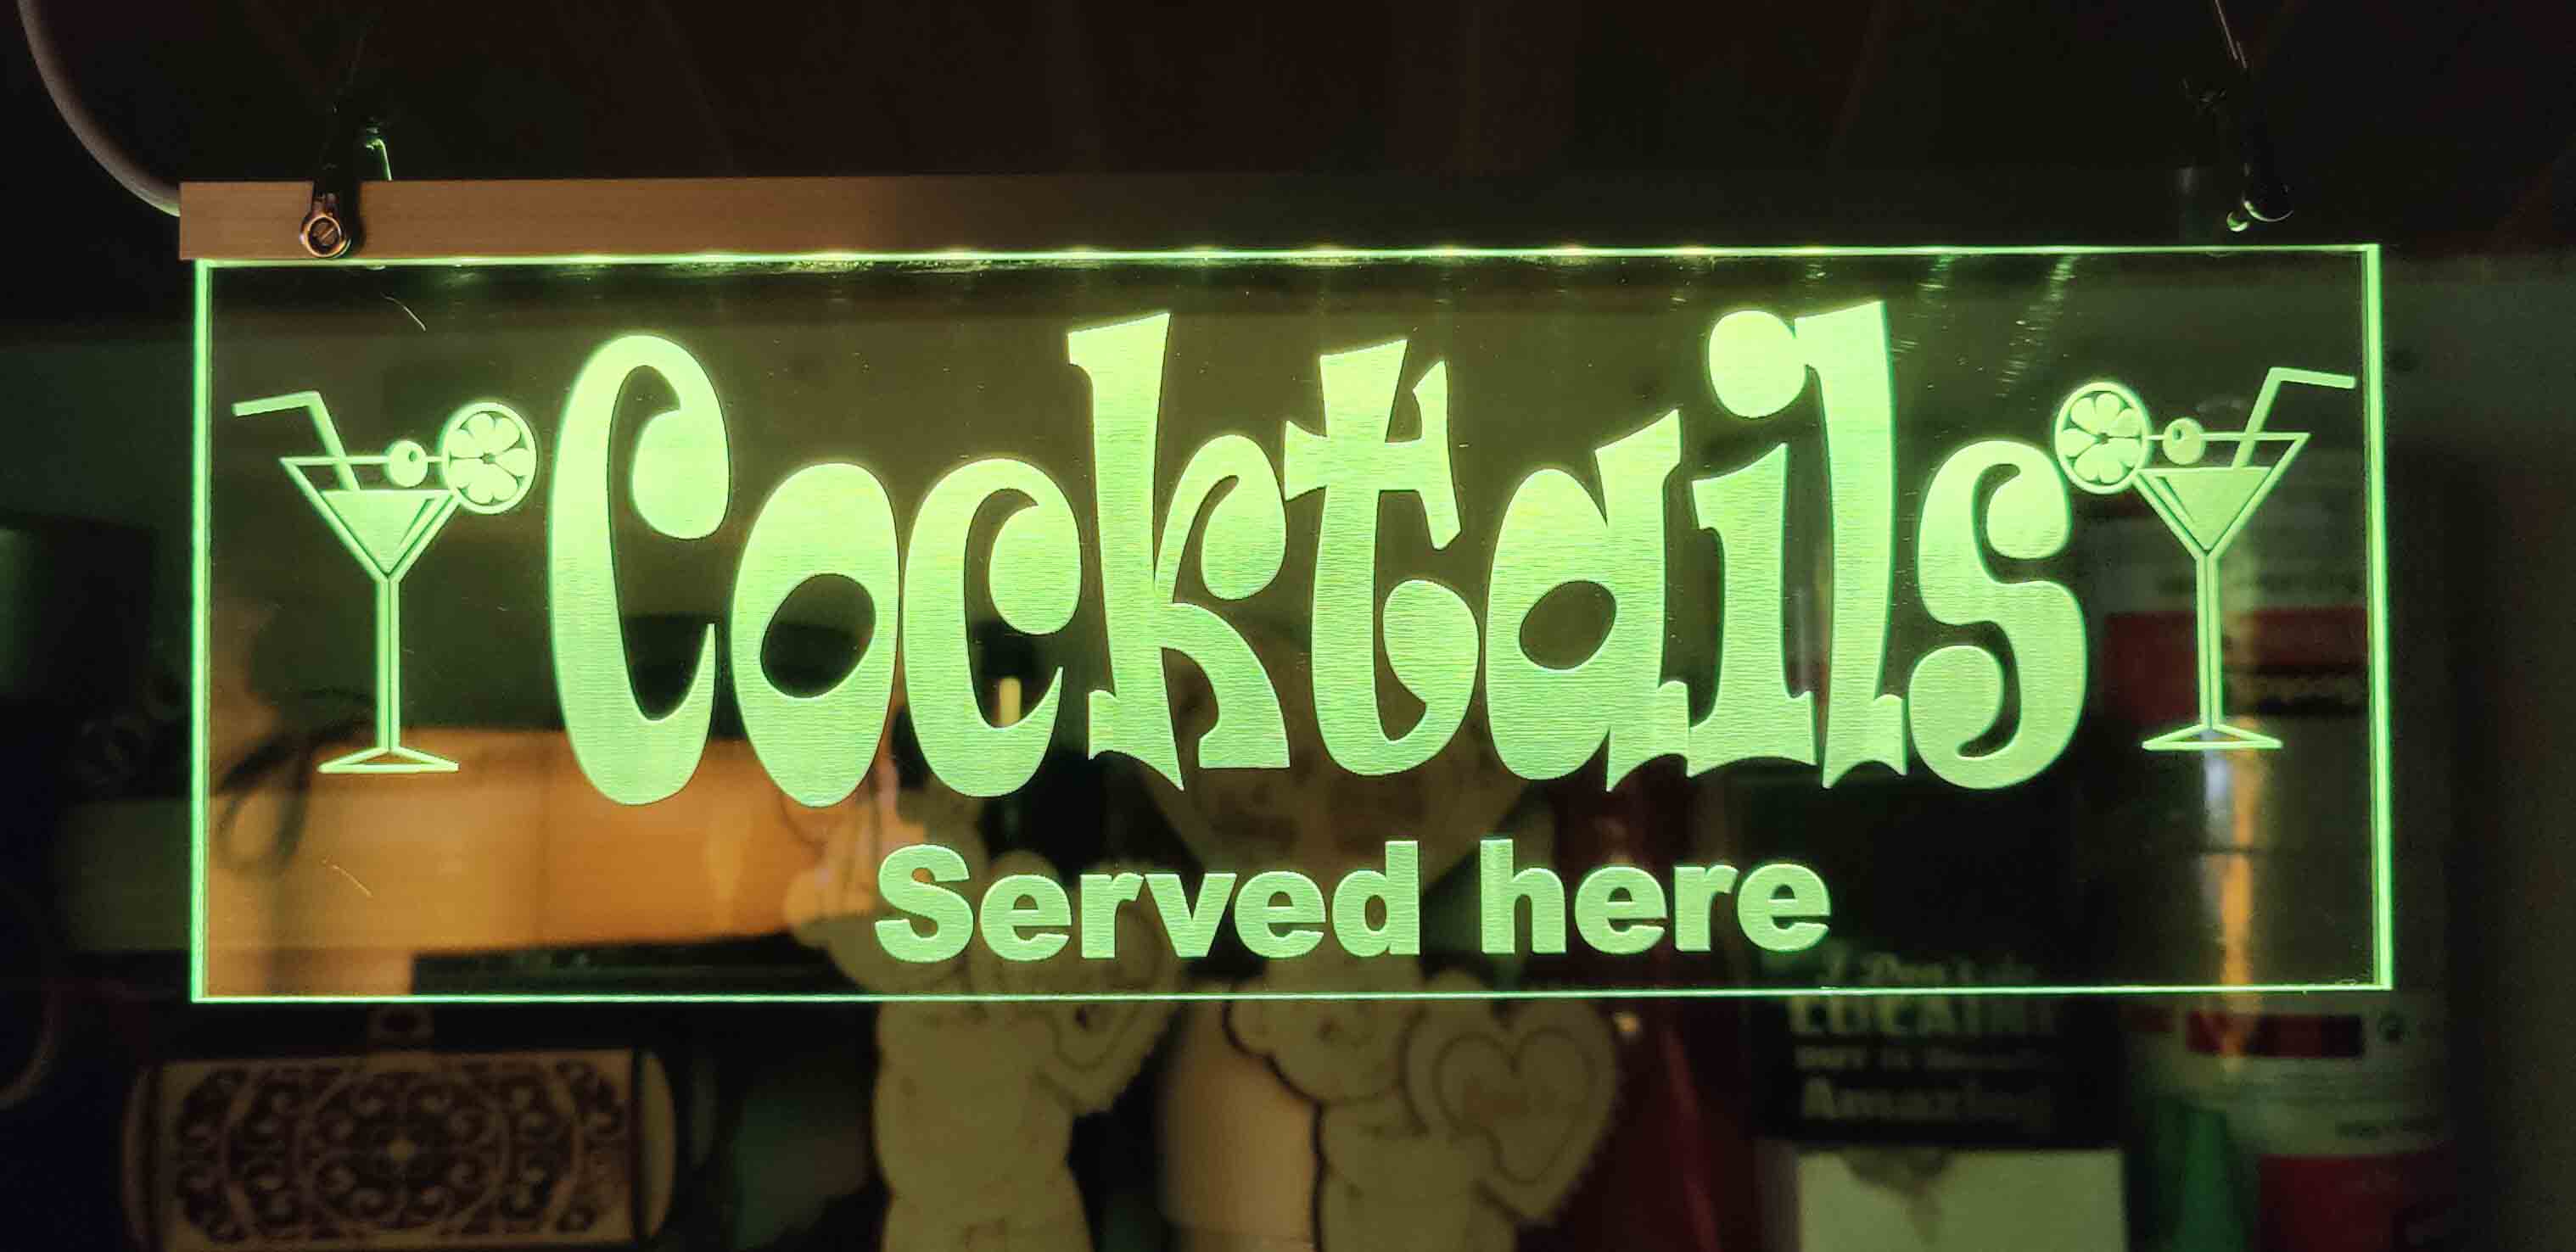 Cocktails served here led bar sign